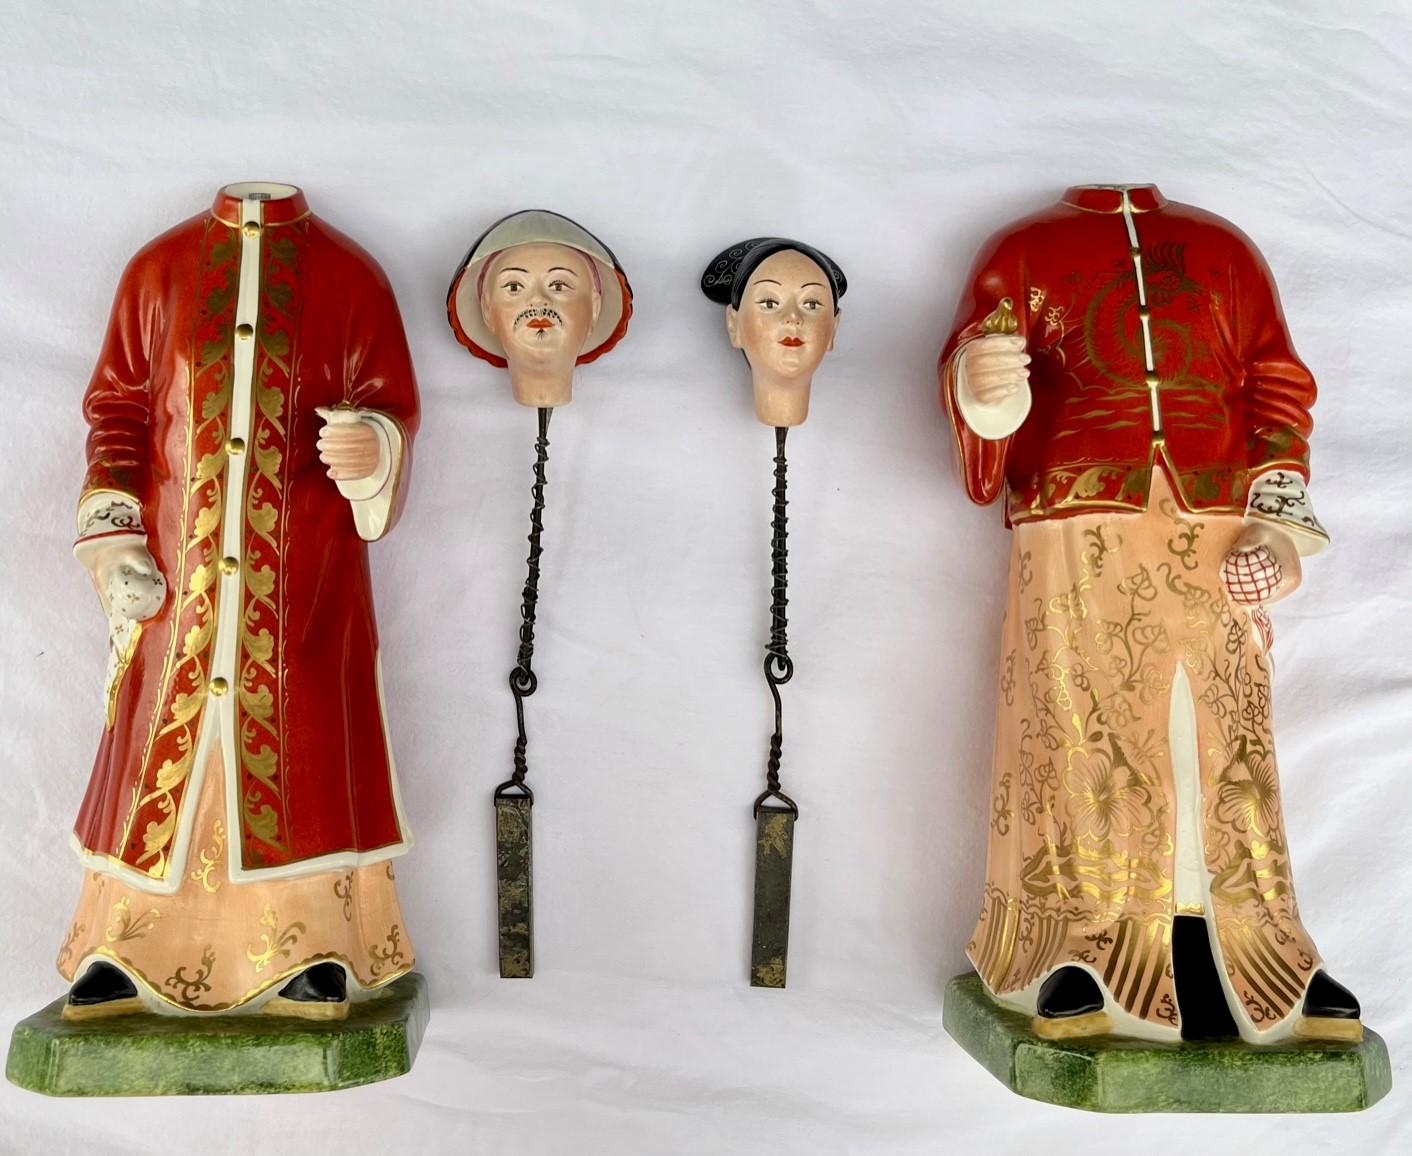 Paire de figurines en porcelaine de chinoiseries italiennes à tête tombante, Mottahedeh, Italie.

Paire de figurines de Mandarins de style export chinois, avec tête hochant la tête, provenant de la Collectional et Rafi Mottahedeh, fondateurs de la